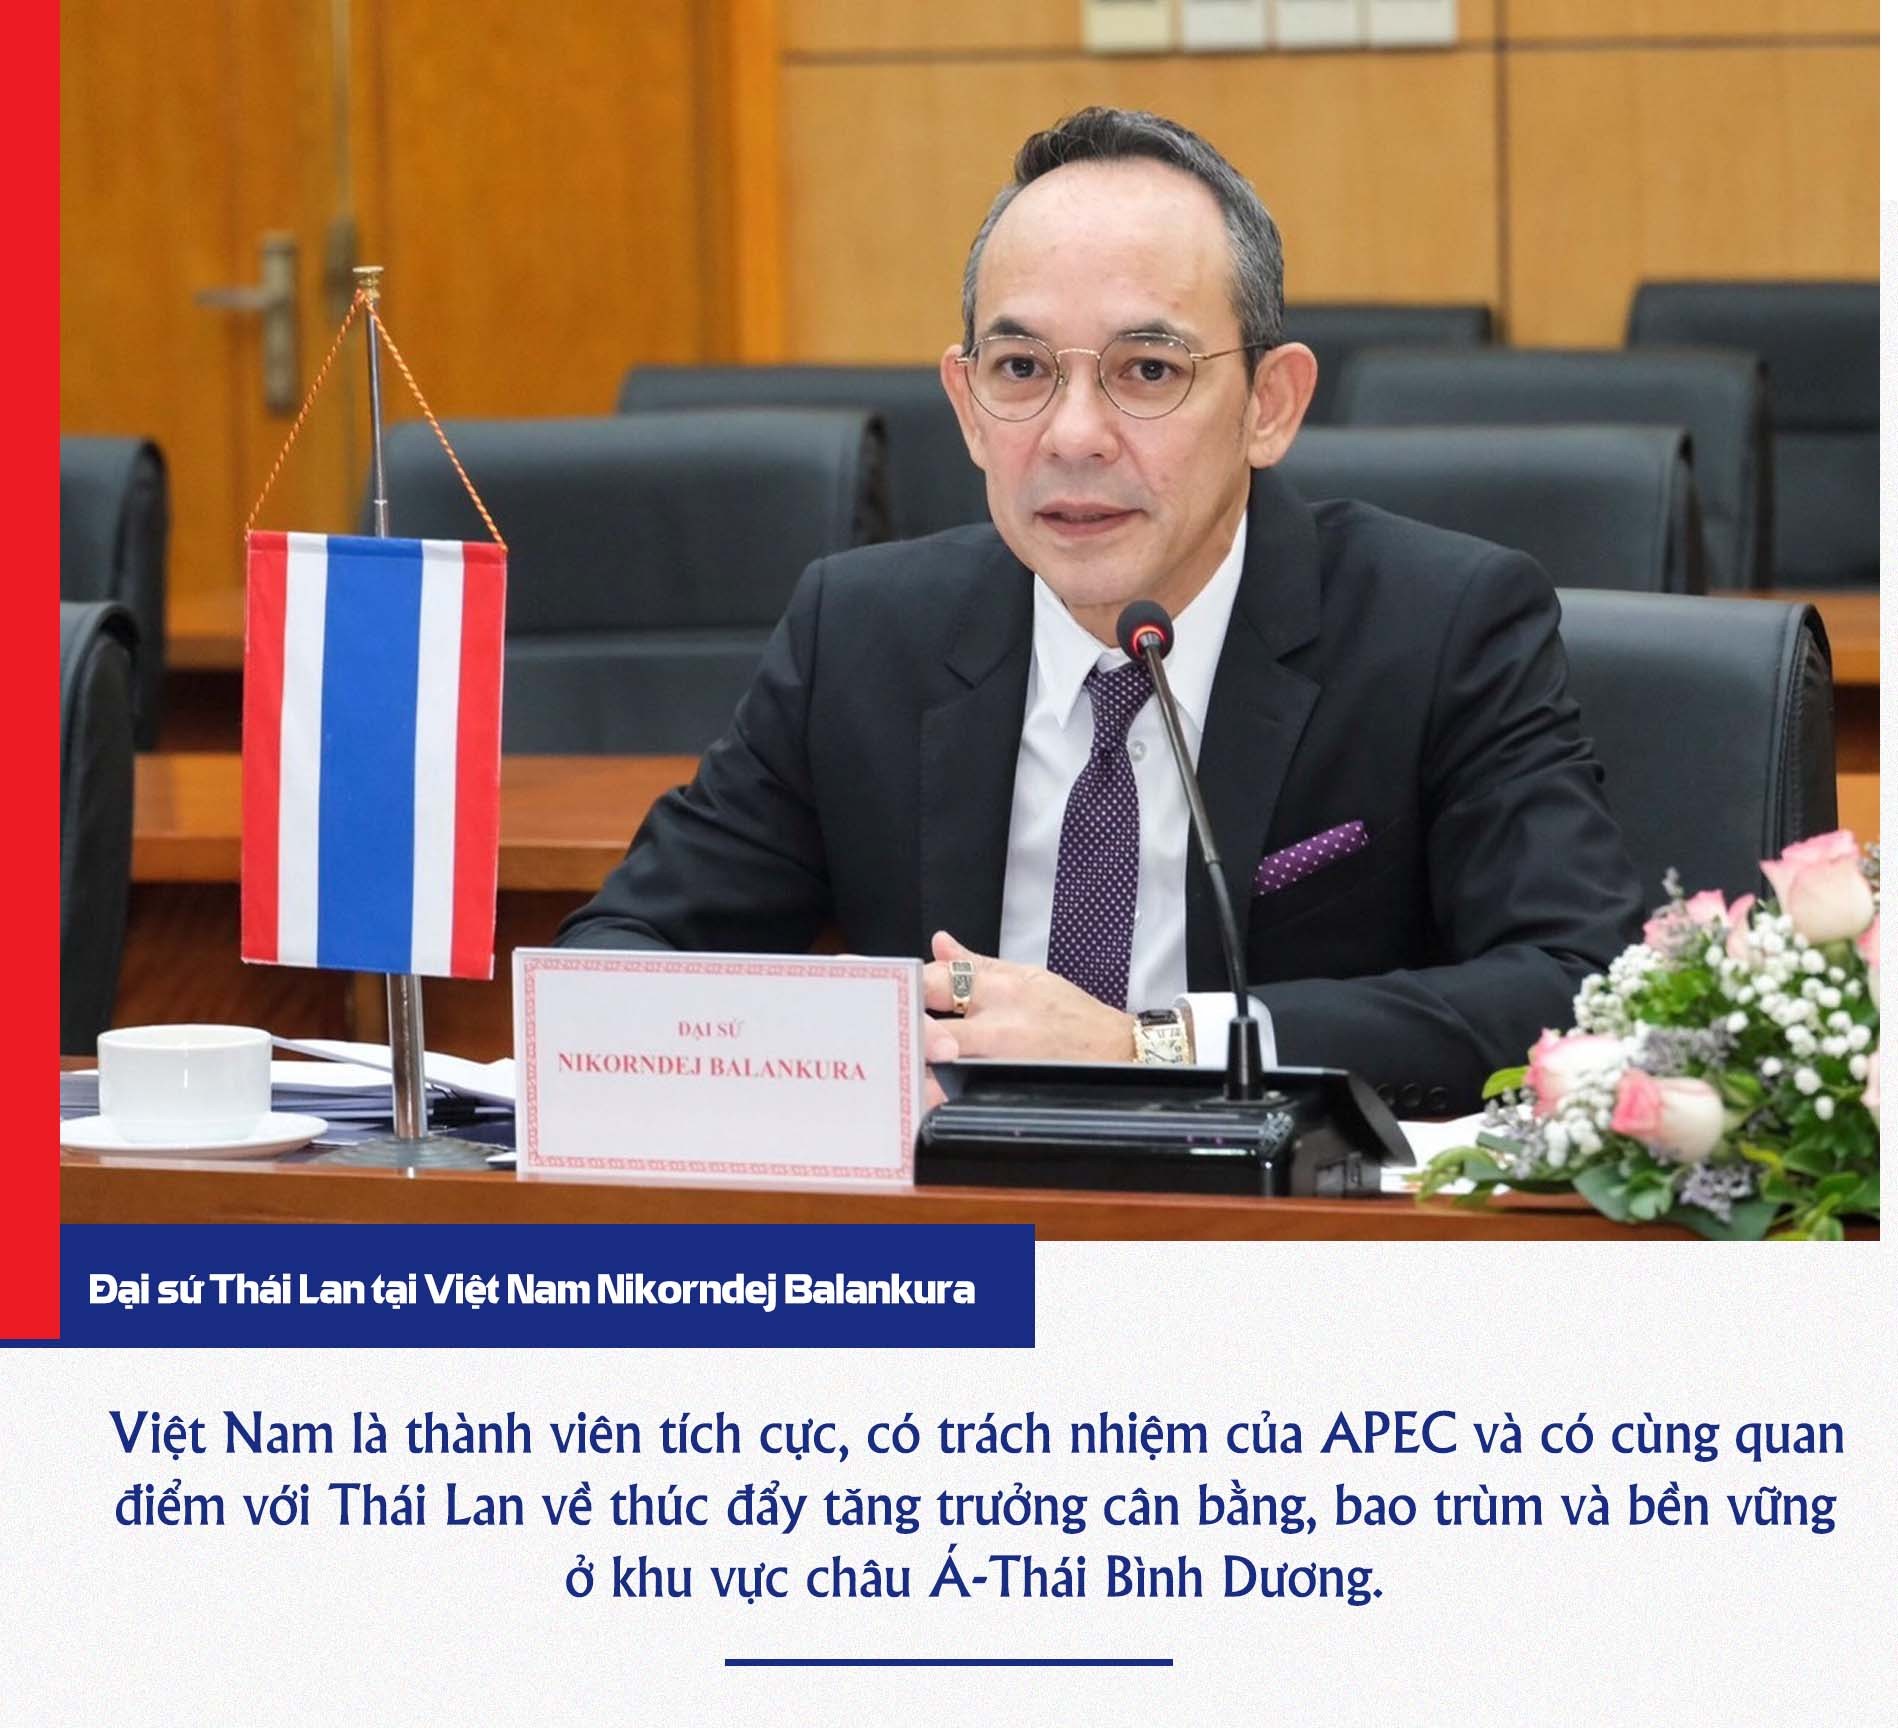 Chủ tịch nước Nguyễn Xuân Phúc là lãnh đạo nước ngoài đầu tiên thăm chính thức Thái Lan dịp APEC